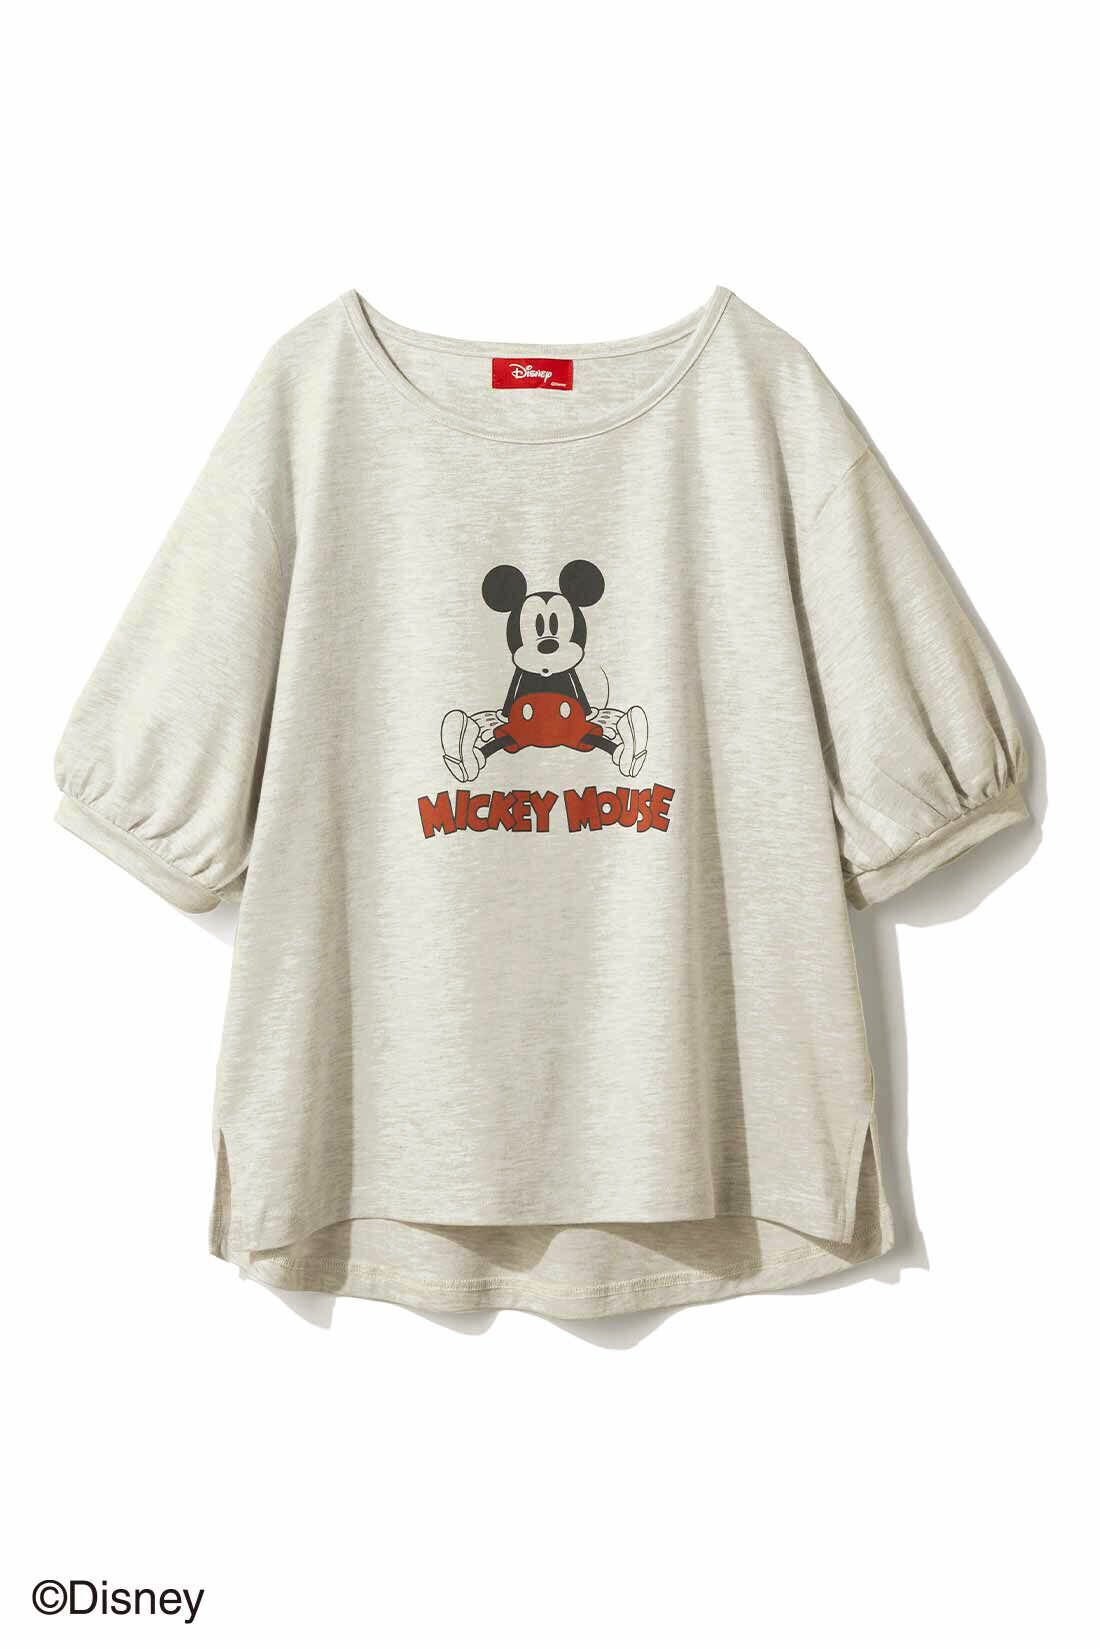 【フォロー割】オールド ミッキーマウス キャラクター Tシャツ 総柄